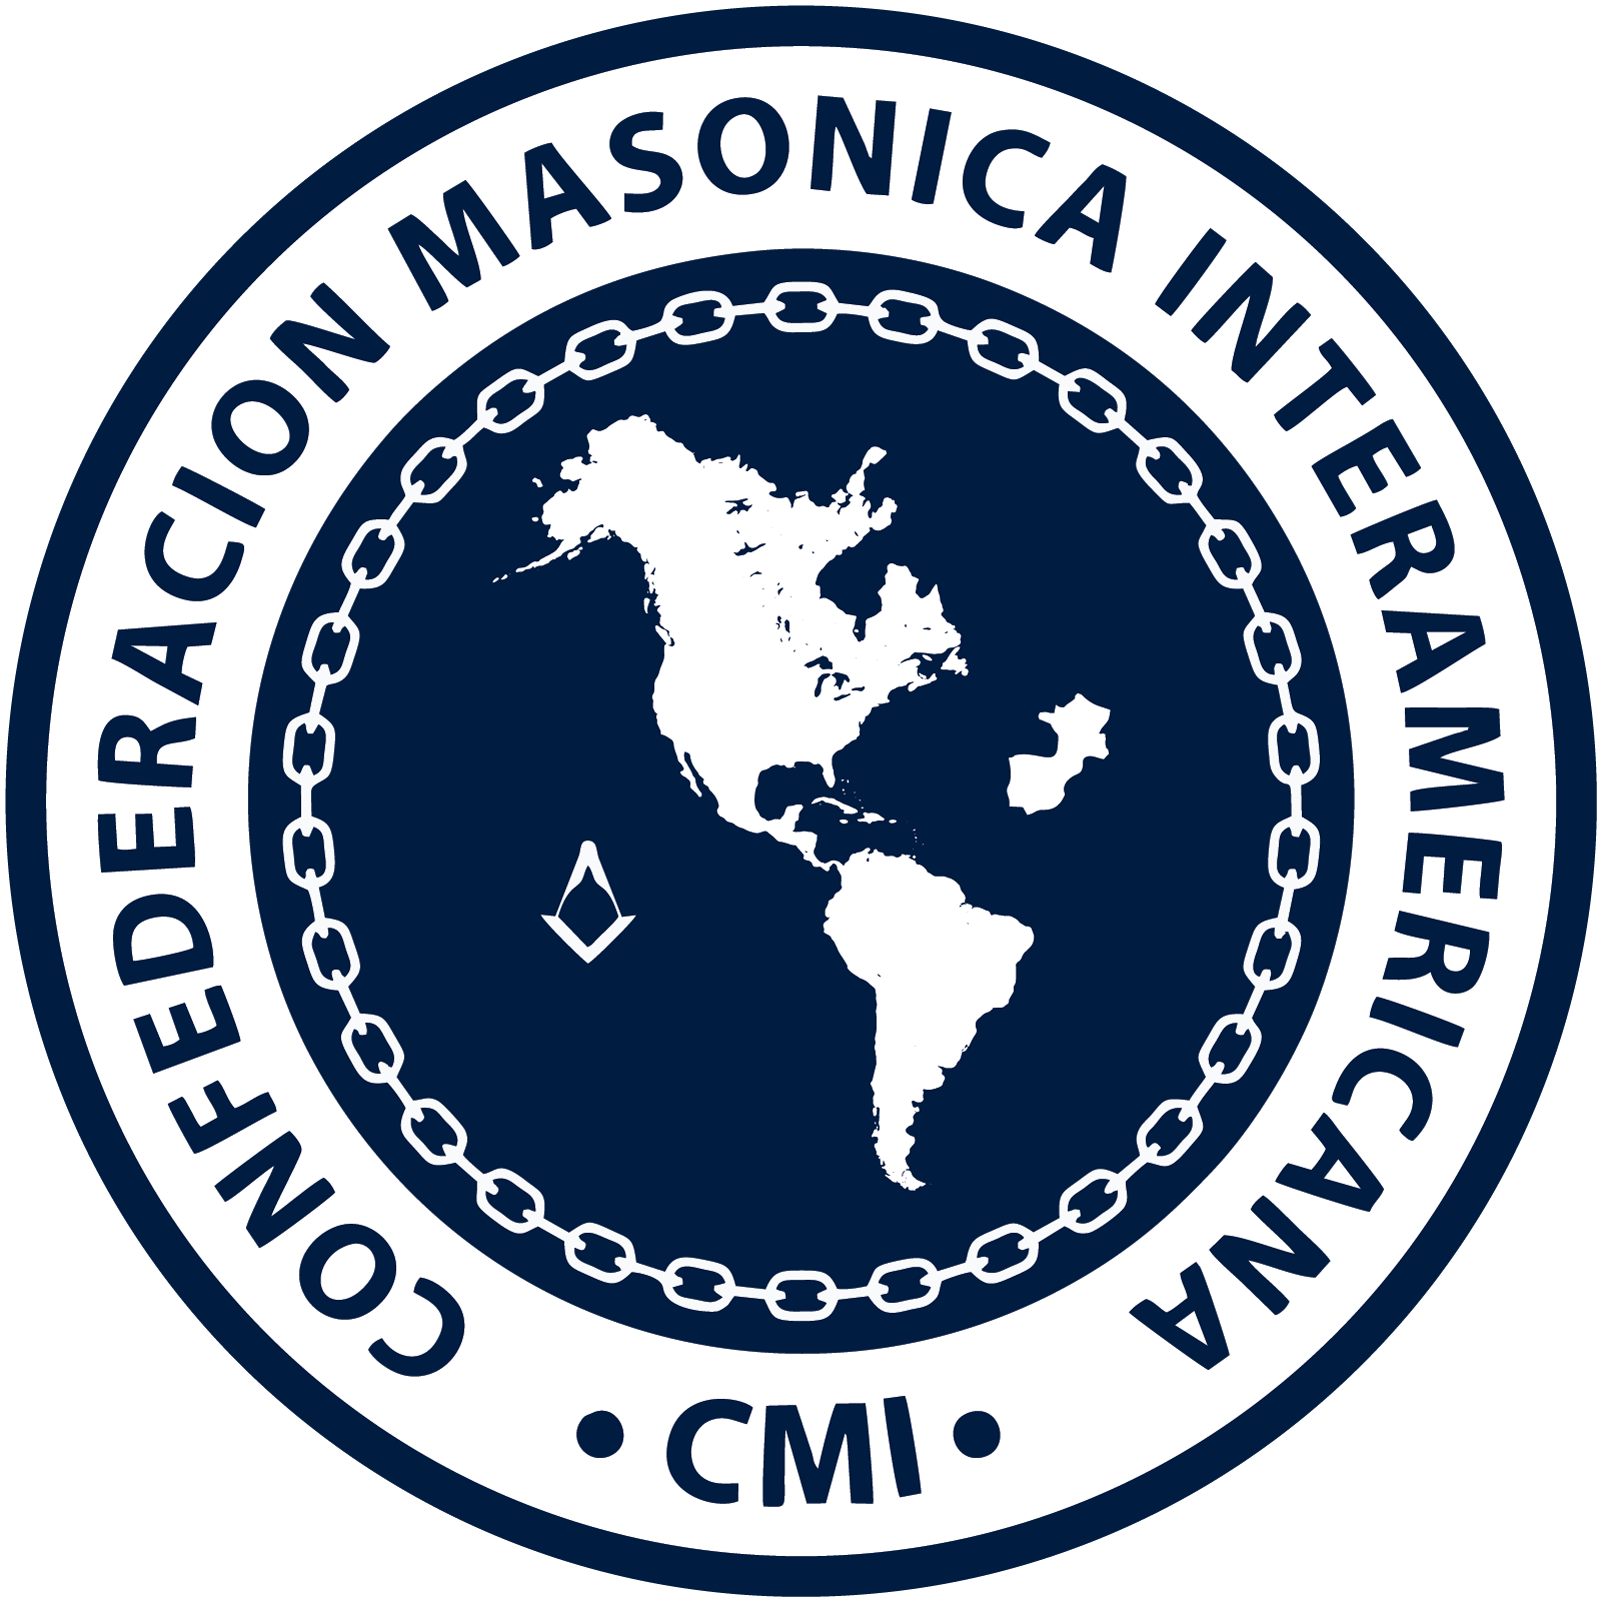 Confederação Maçônica Internacional